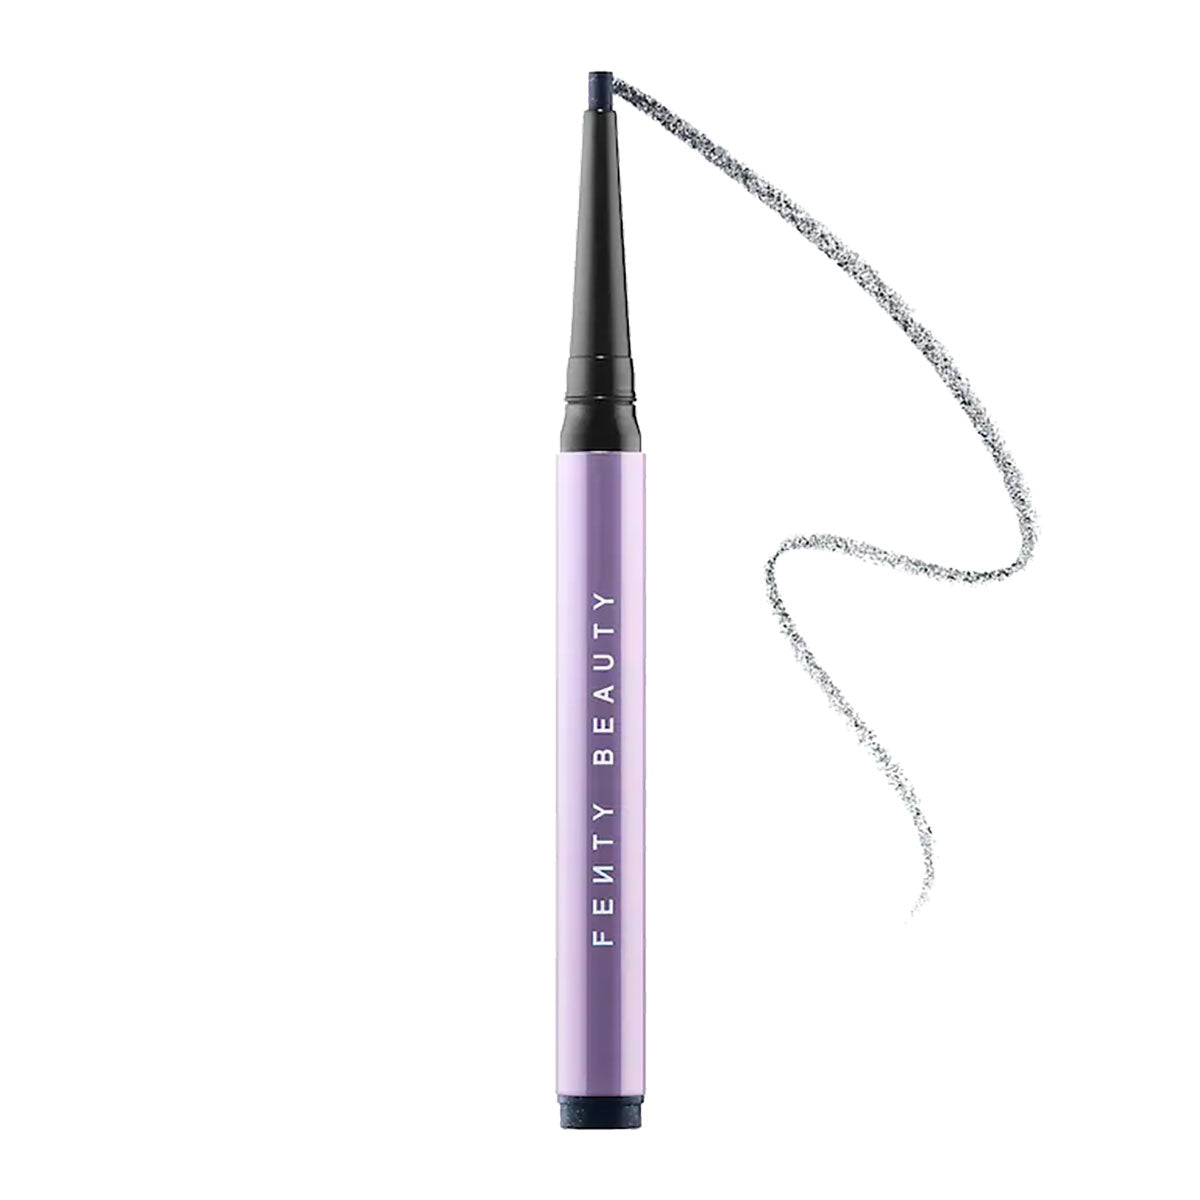 Fenty Beauty Flypencil Longwear Pencil Eyeliner | Bachelor Pad